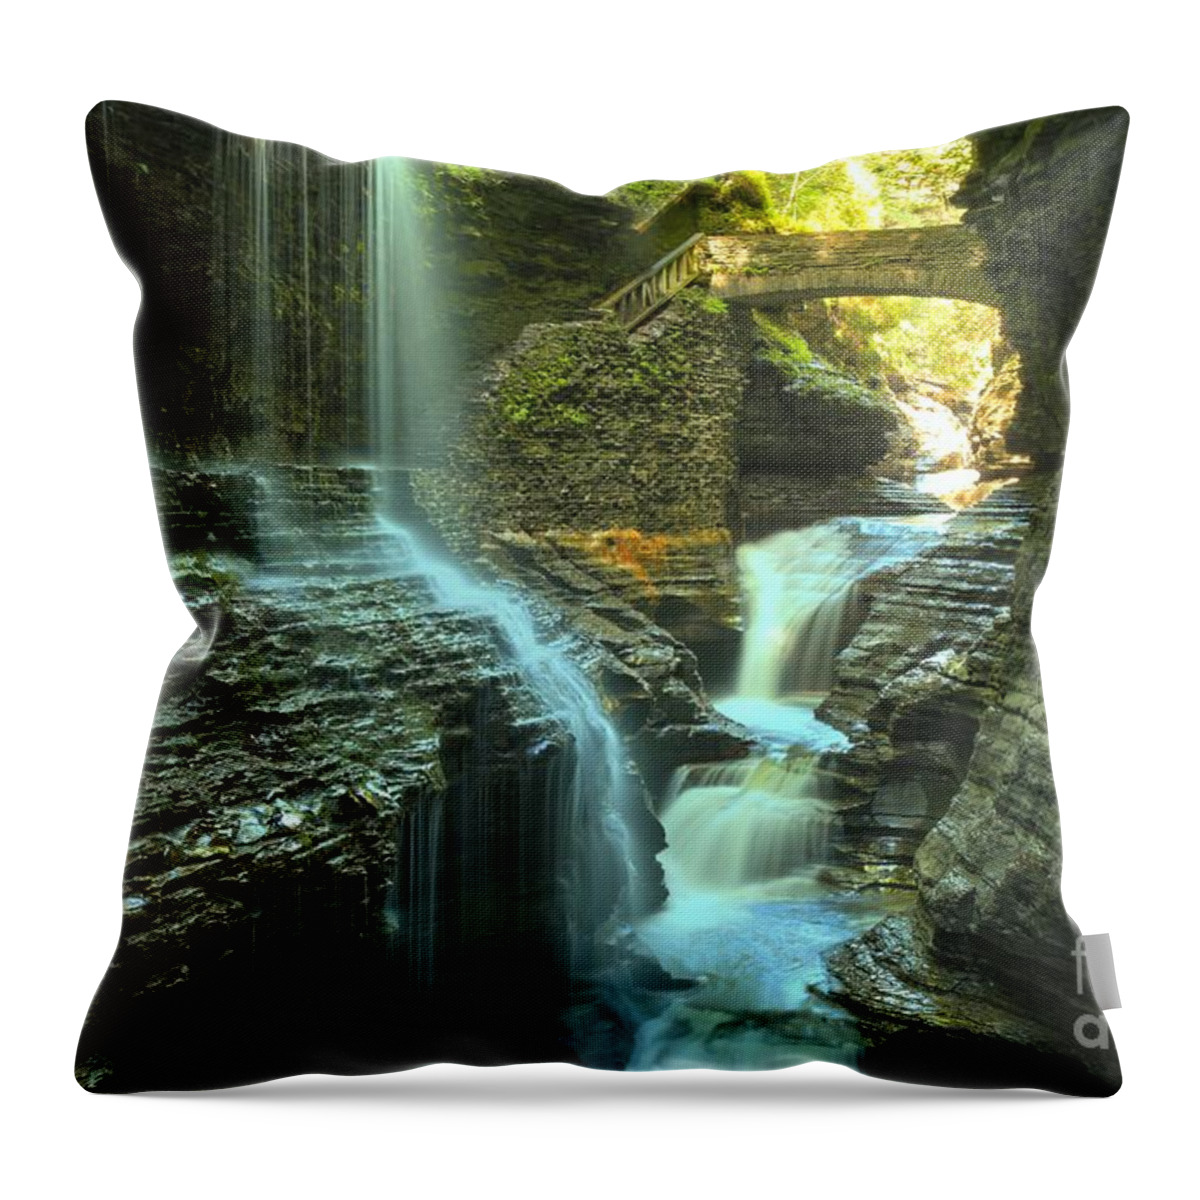 Watkins Glen State Park Throw Pillow featuring the photograph Rainbow Falls Watkins Glen by Adam Jewell